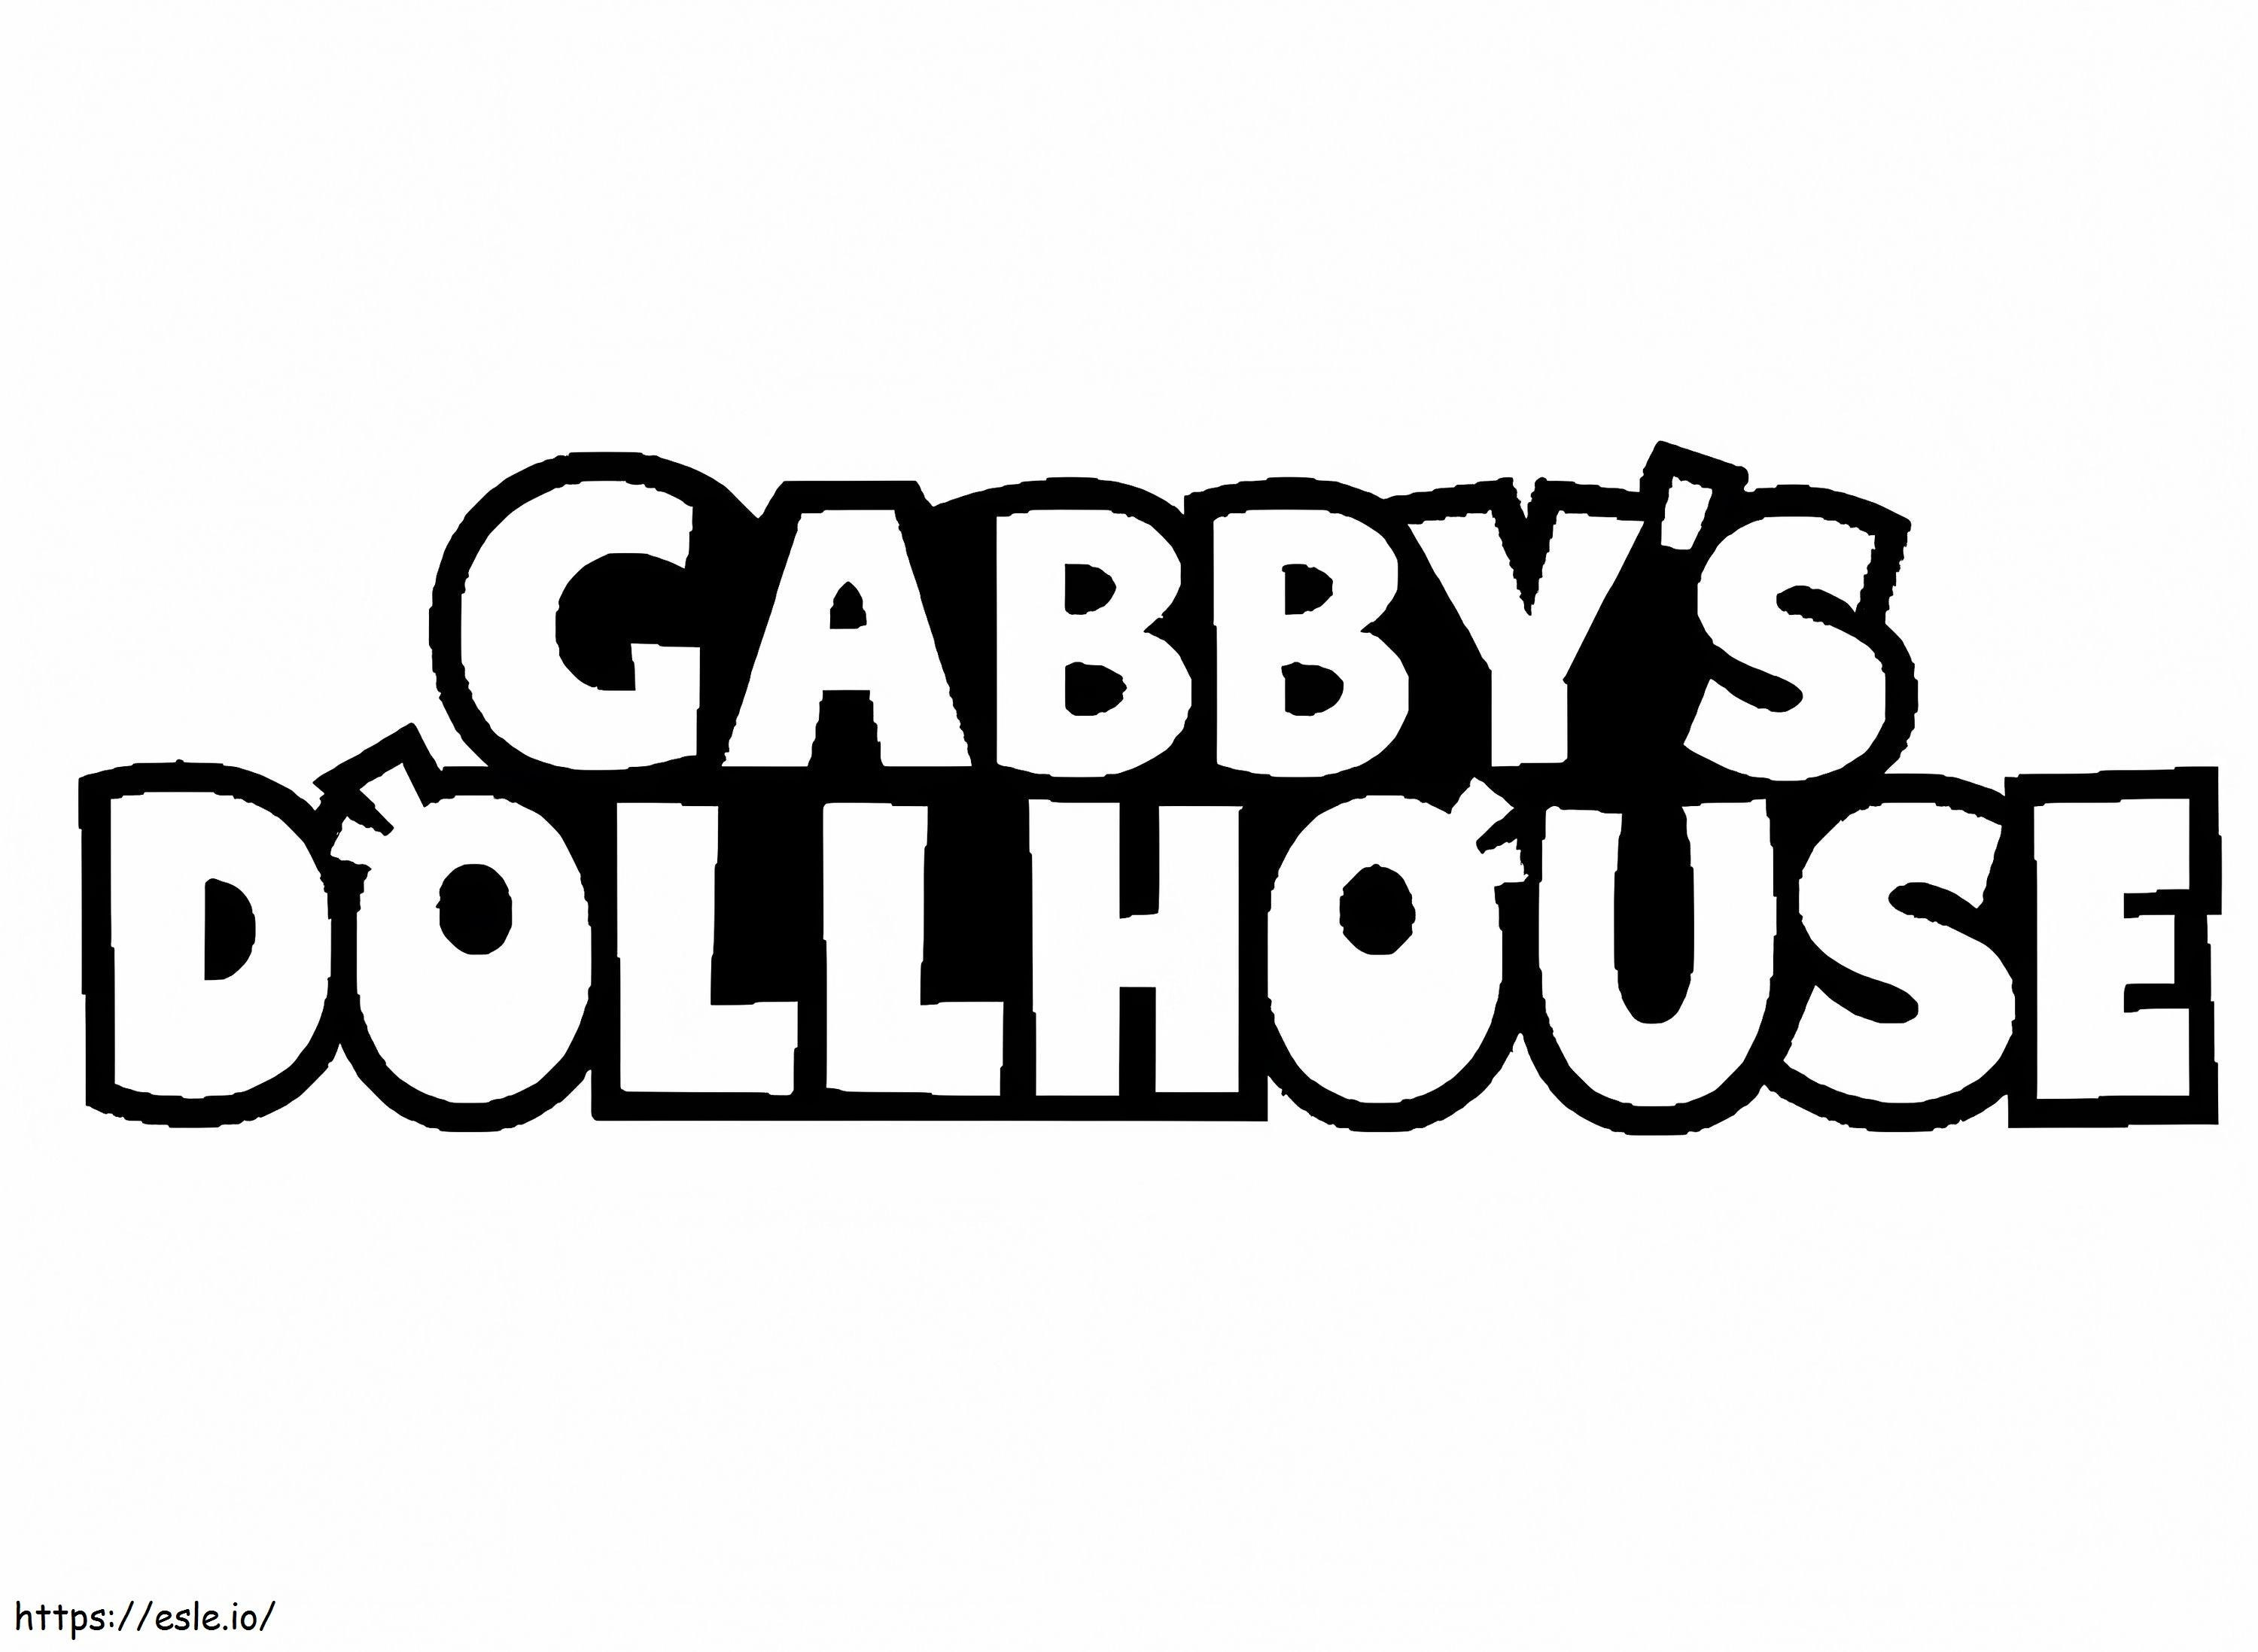 Casa de bonecas Gabbys com logotipo para colorir